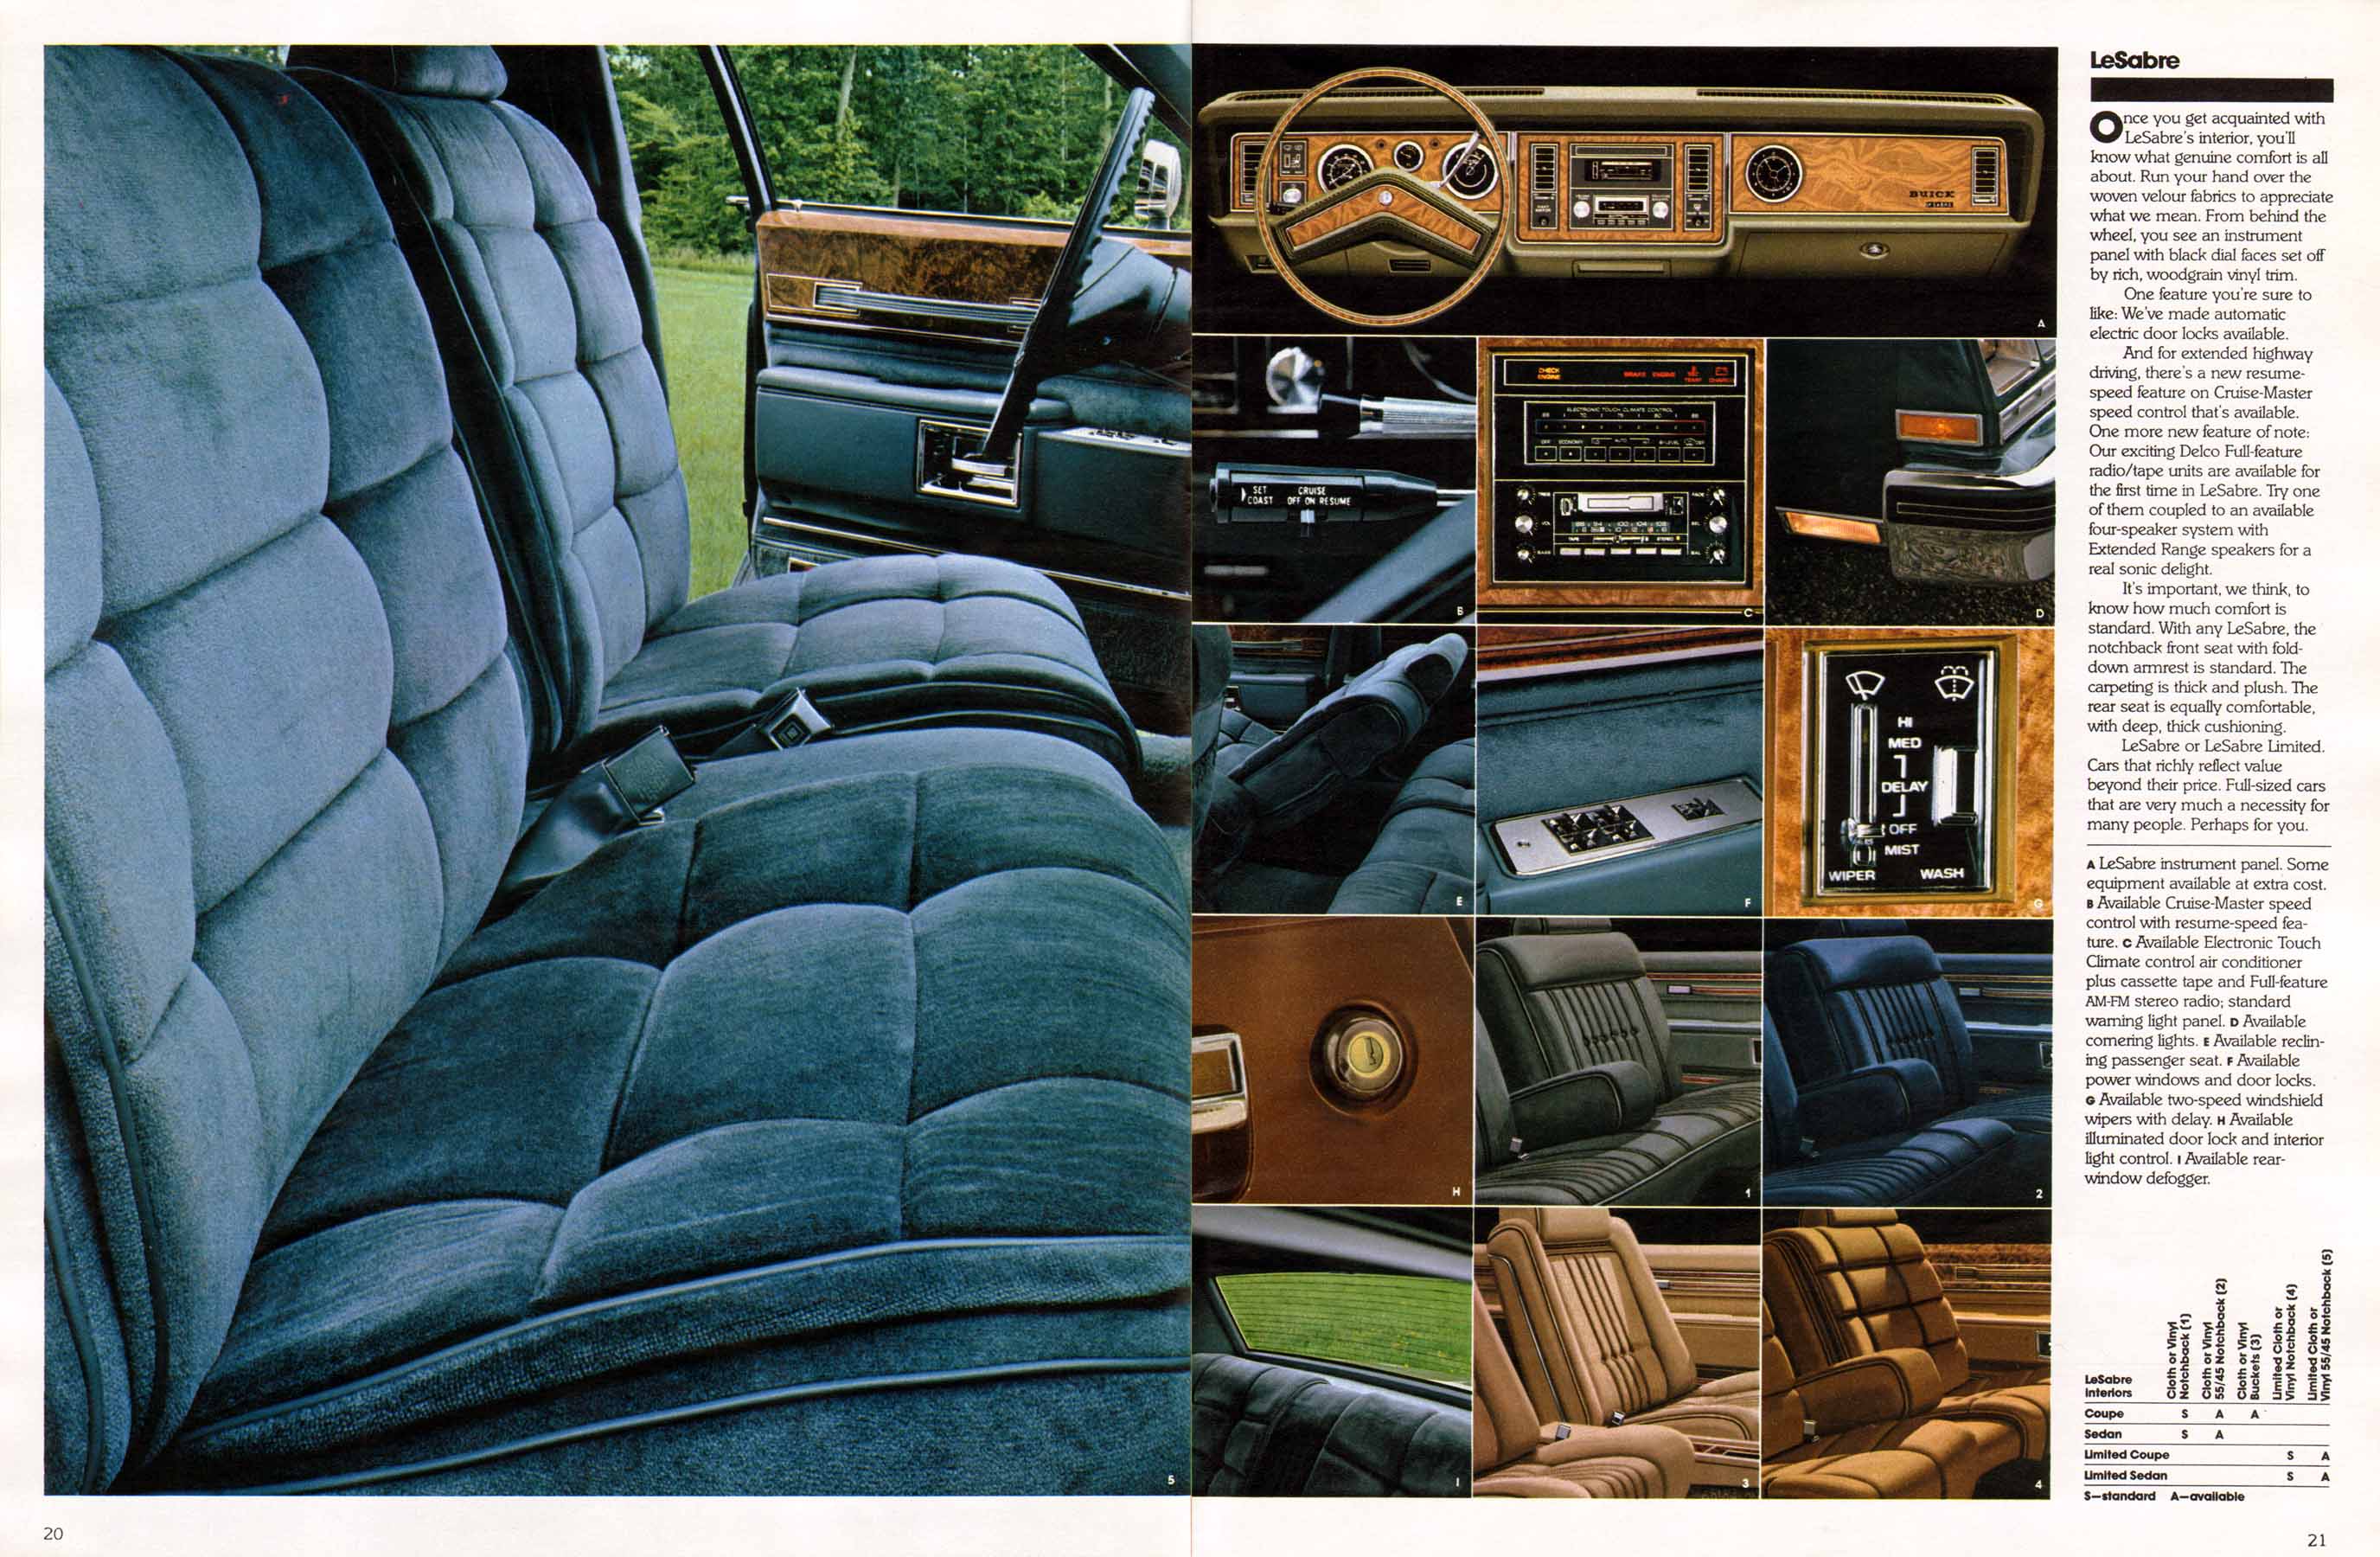 1981 Buick Full Line Prestige-20-21